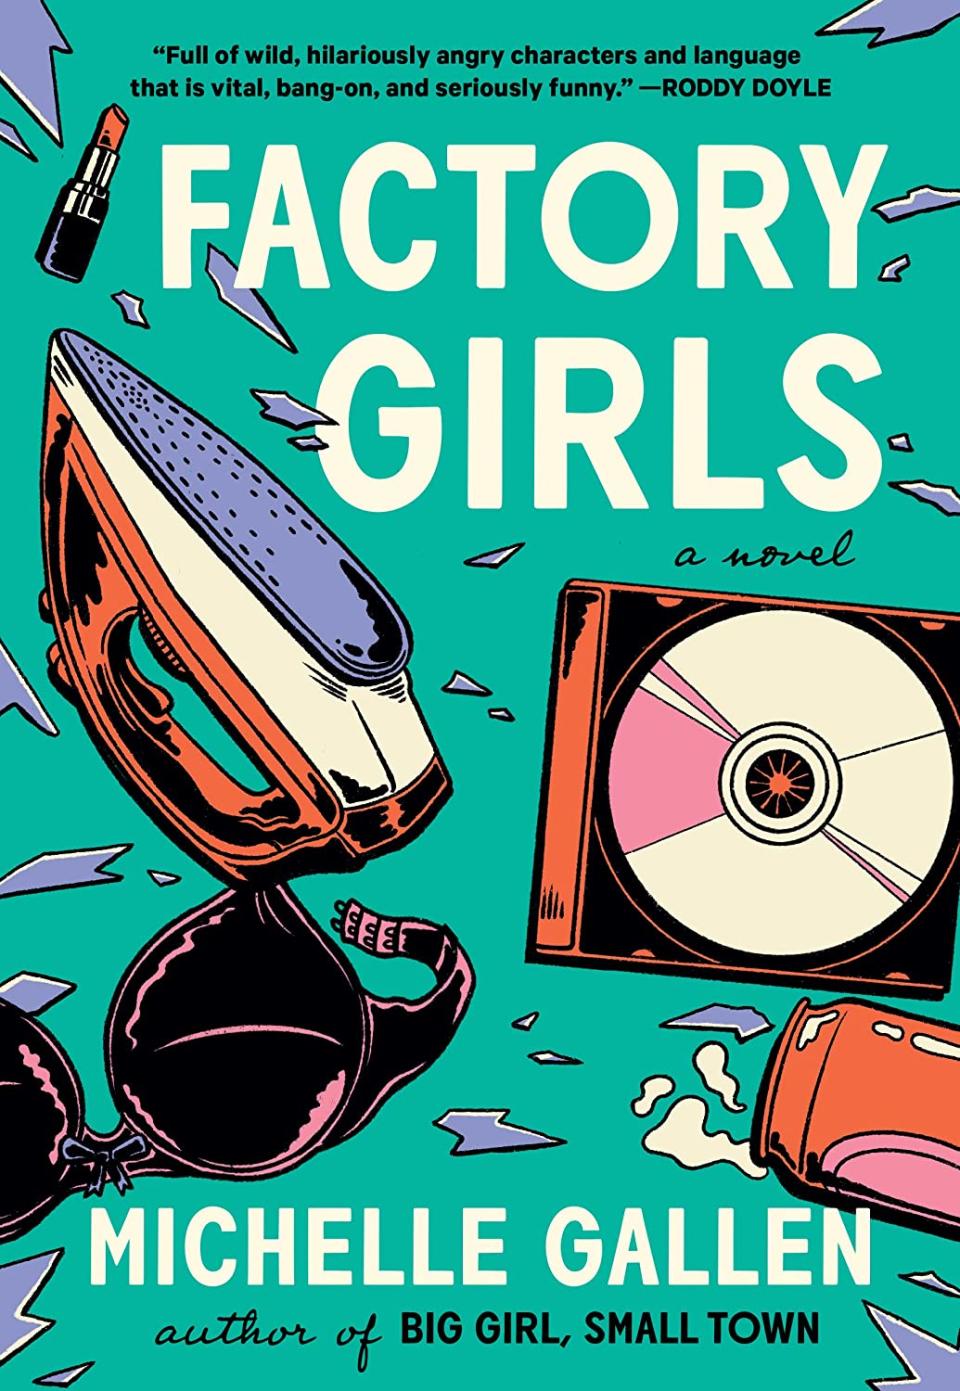 Factory Girls. By Michelle Gallen